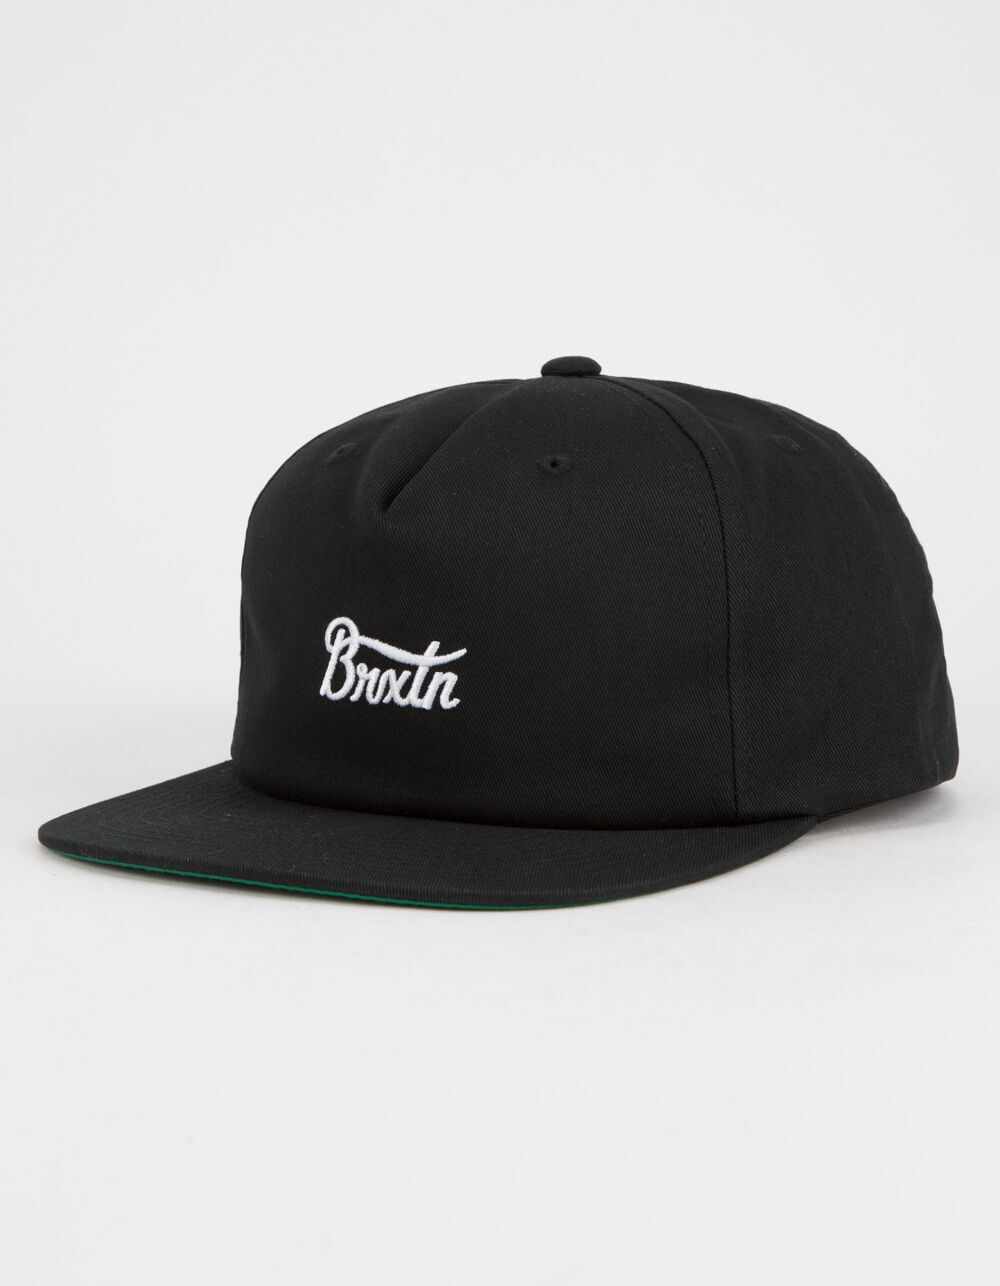 New Brixton Potrero Black Mens Snapback Cap Hat